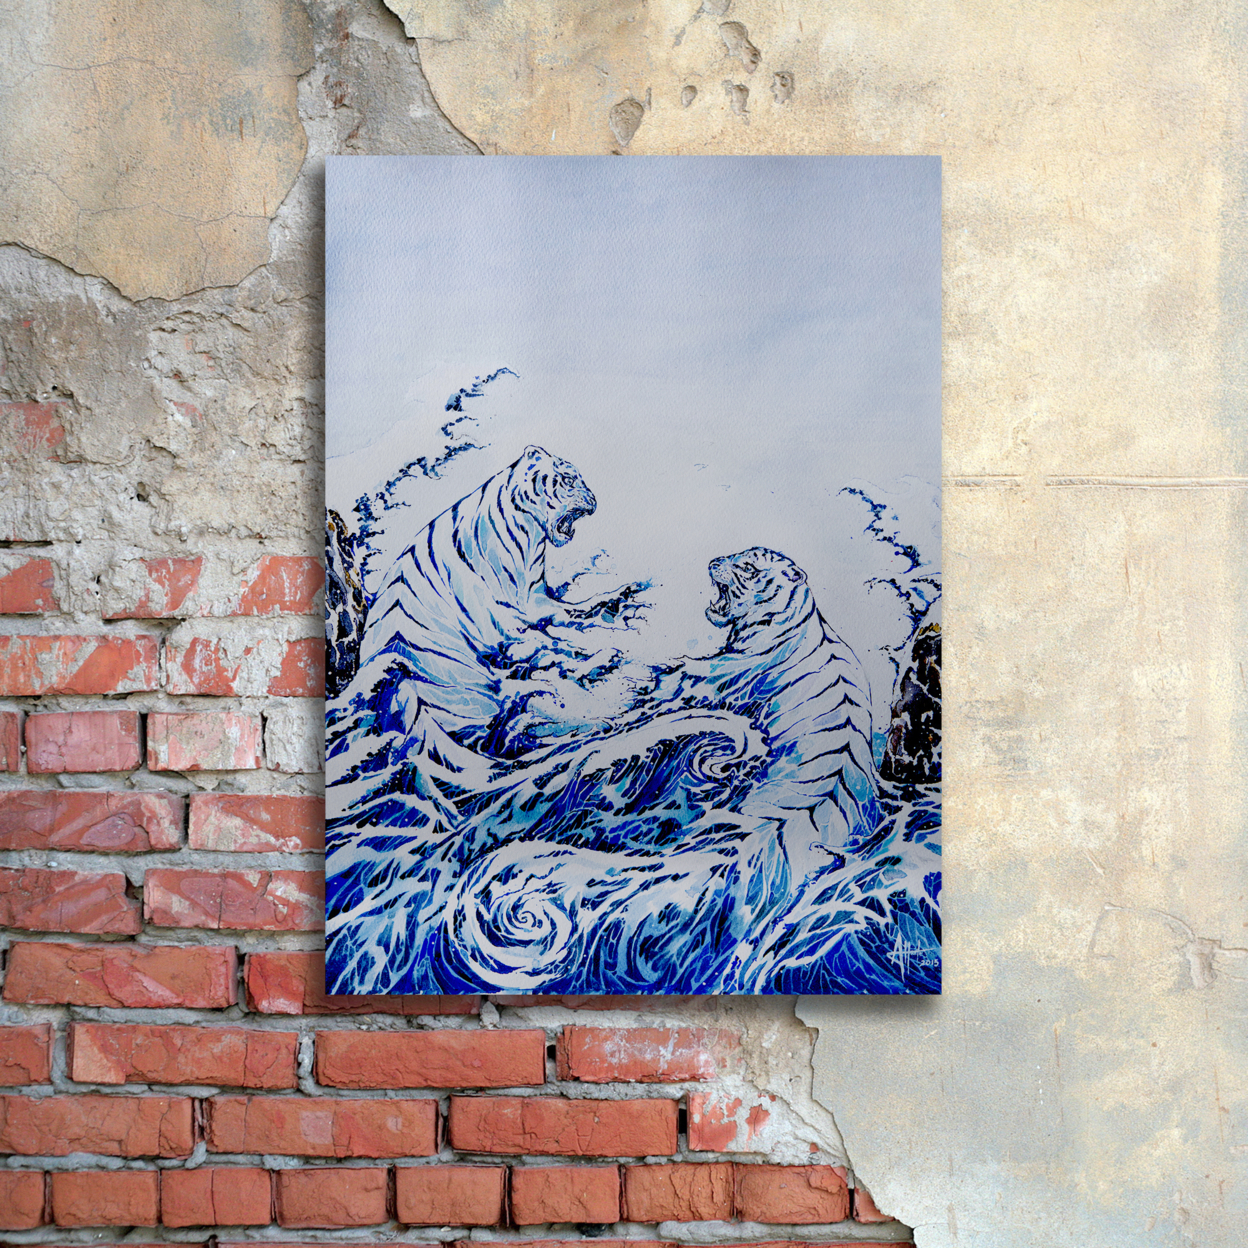 Marc Allante 'The Crashing Waves' Floating Brushed Aluminum Art 16 X 22